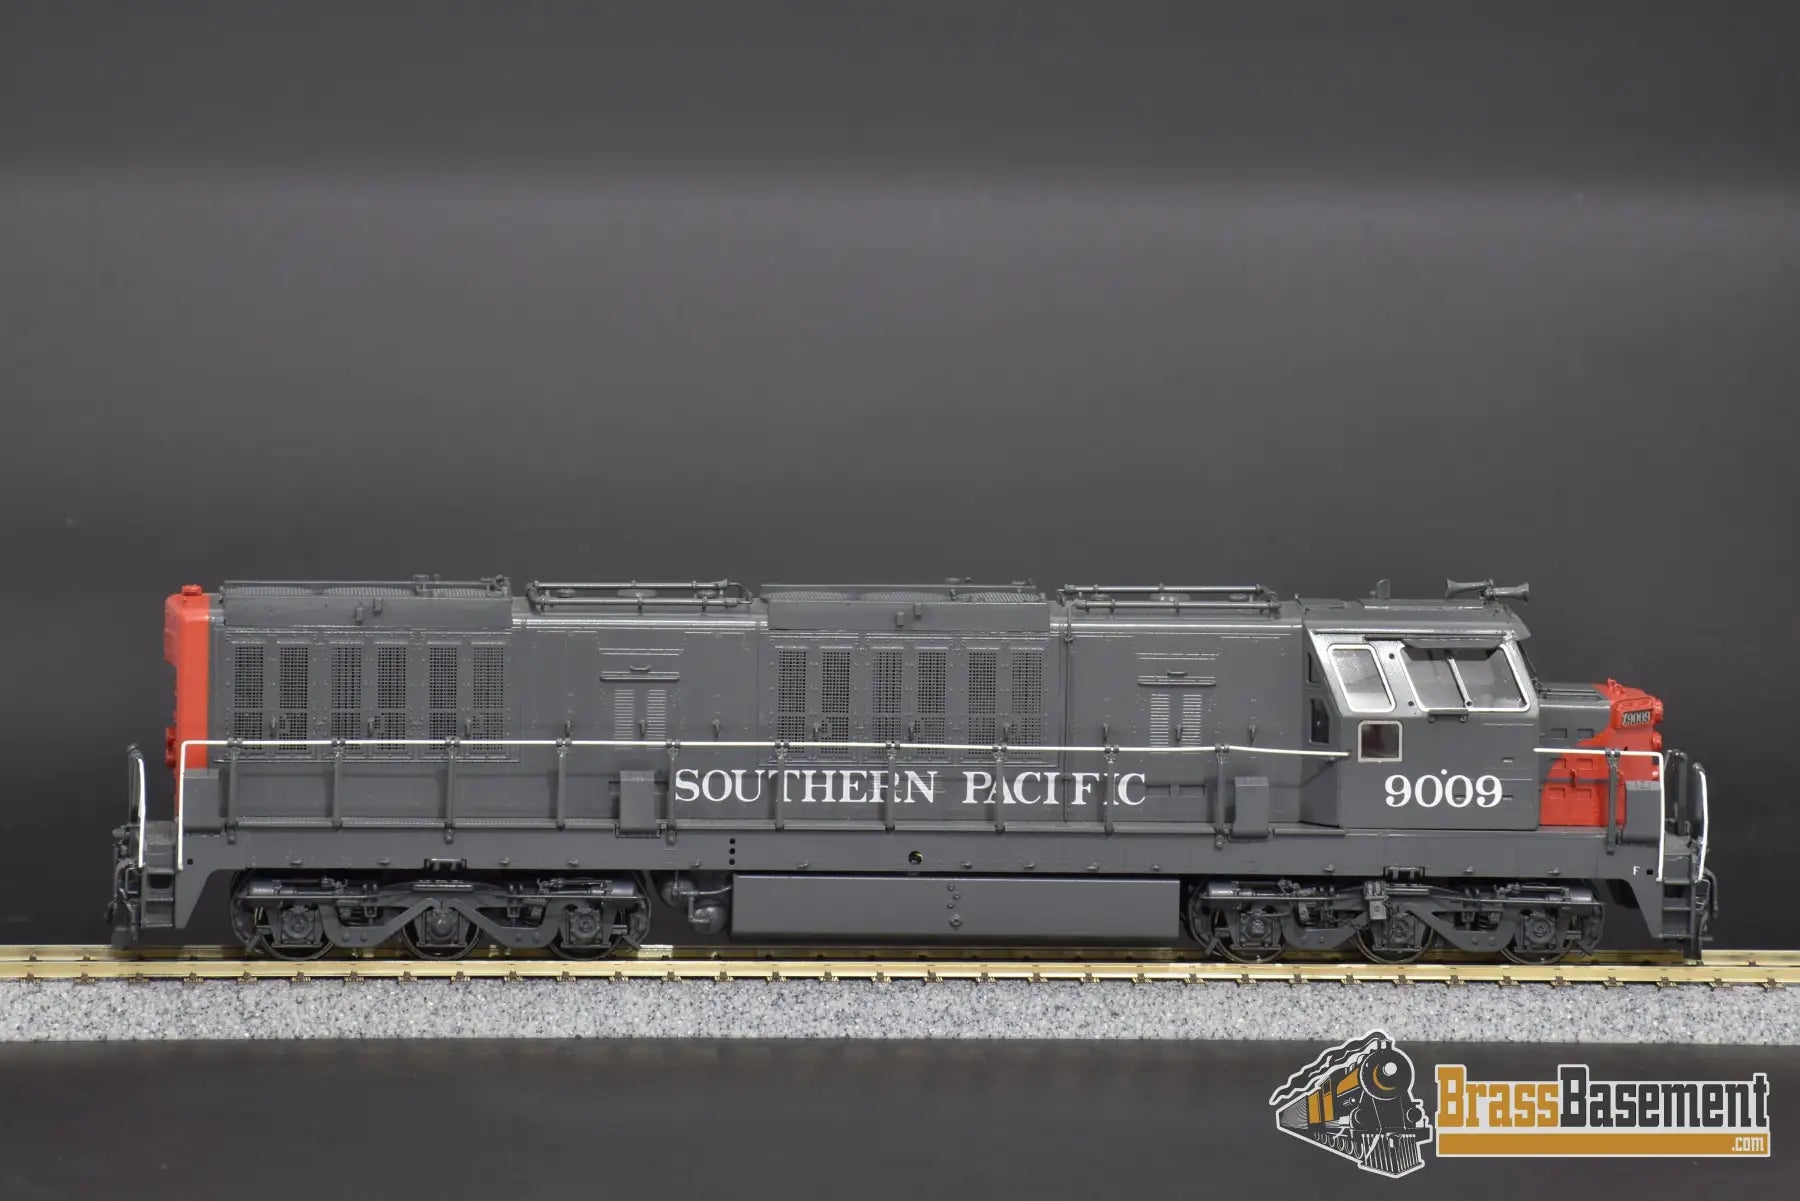 Ho Brass - Omi 6463.1 Southern Pacific Sp Krauss - Maffei #9009 Diesel